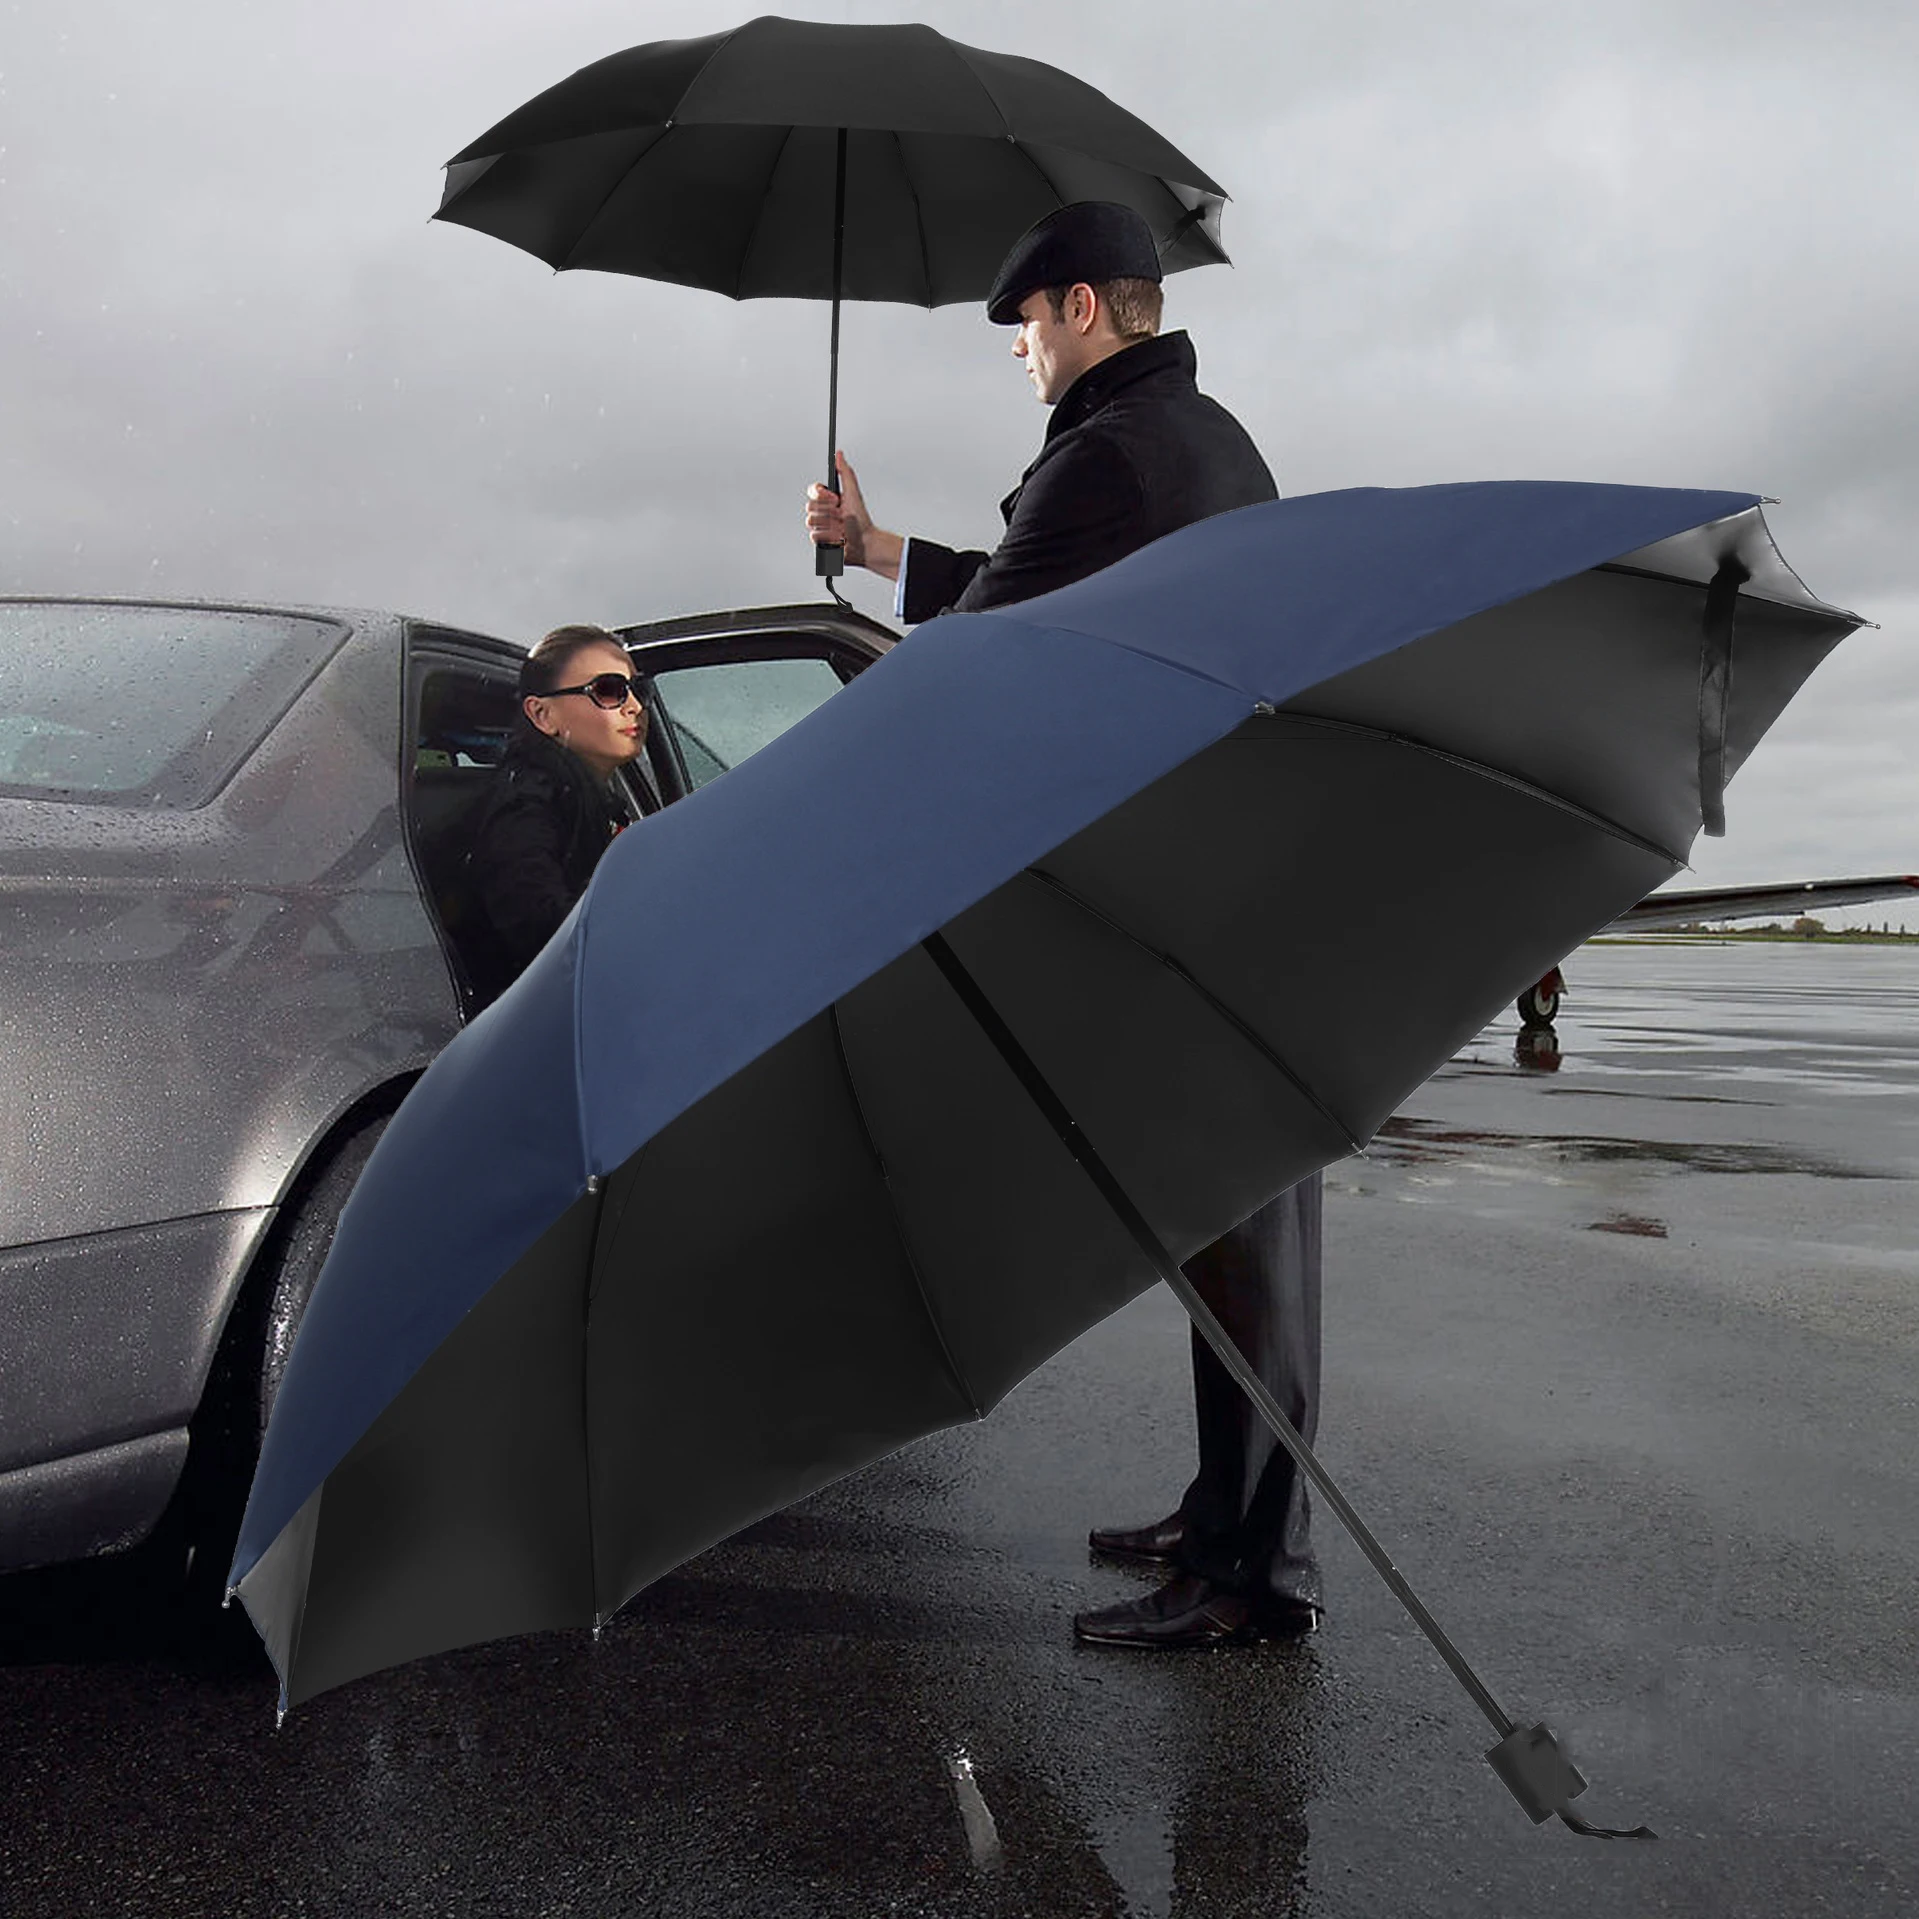 126cm Big Top Qualität Regenschirm Winddicht anti-uv Schutz Auto Luxus Große Business Regenschirme Weiblich Männlich Zehn Knochen Regenschirme